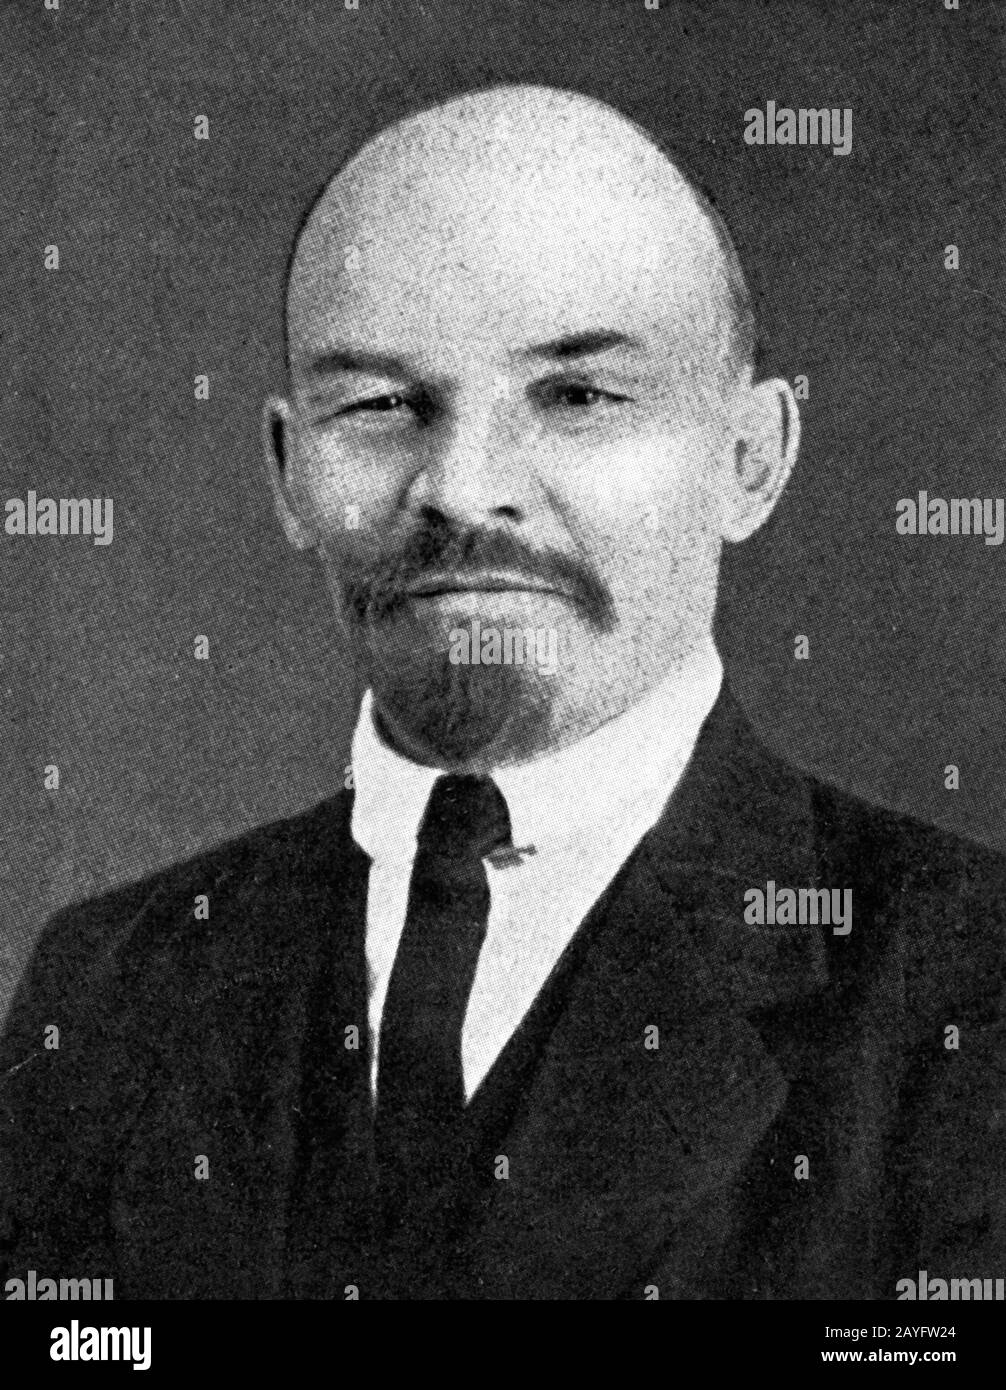 Wladimir Iljich Uljanow oder Lenin ein kommunistischer Revolutionär, der von 1917 bis 1924 Regierungschef von Sowjetrussland und von 1922 bis 1924 der Sowjetunion war. Aus einer Zeitschrift um 1917 Stockfoto